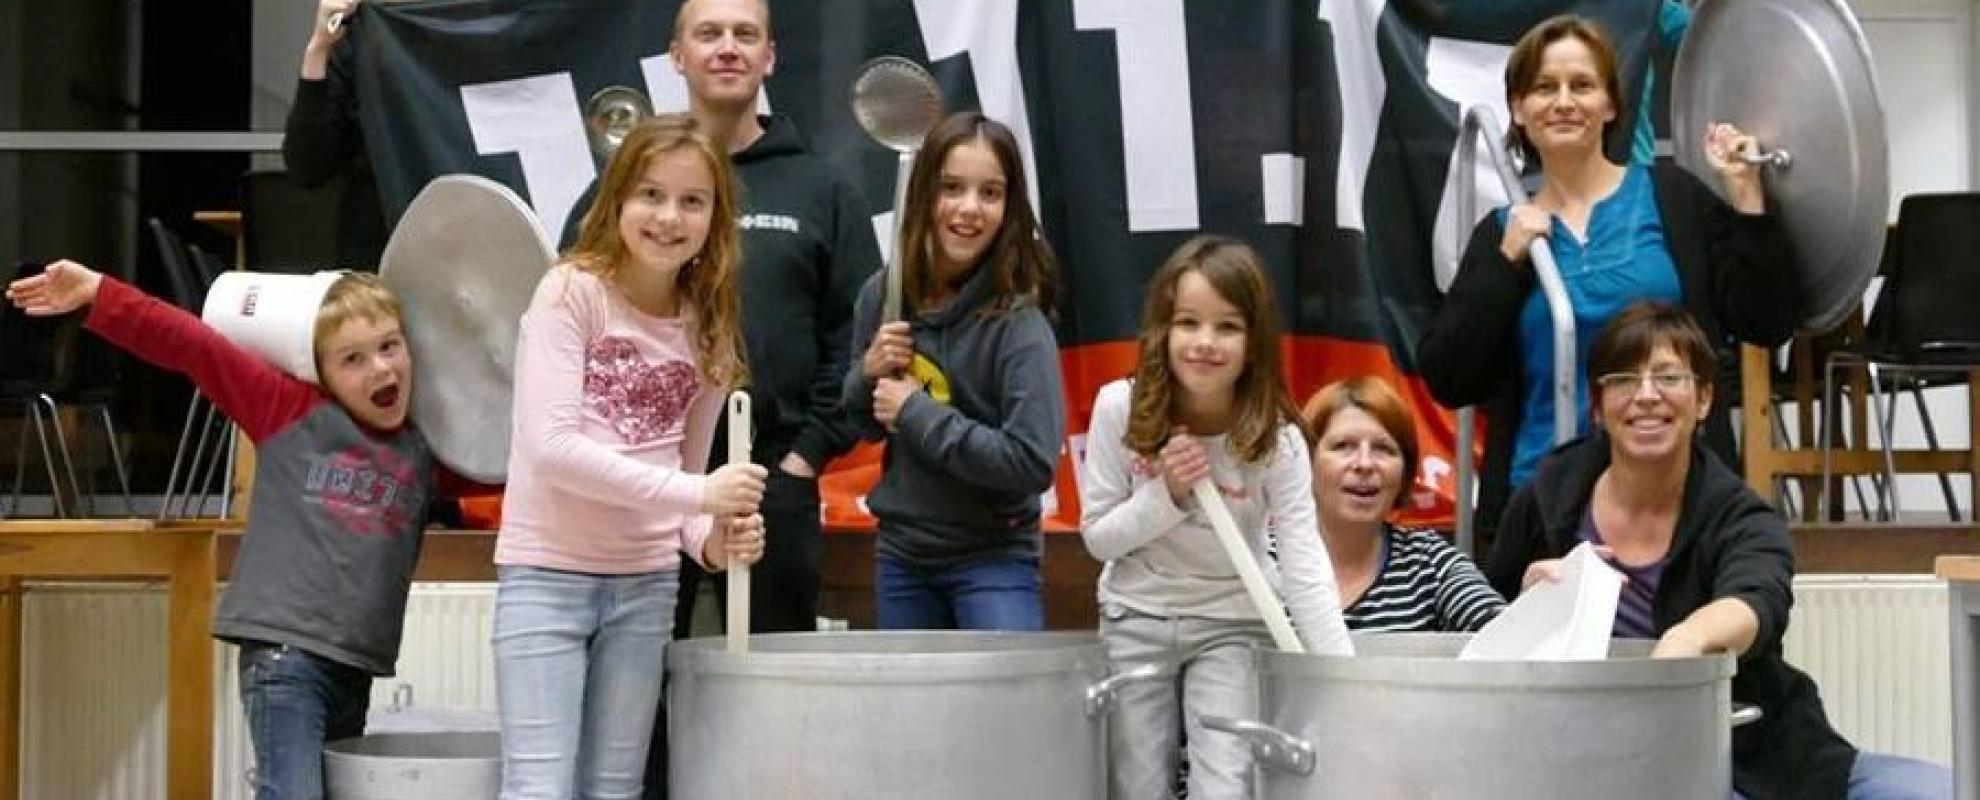 Vrijwilligers in Zingen met extra grote soeppotten, ter voorbereiding van de soepverkoop